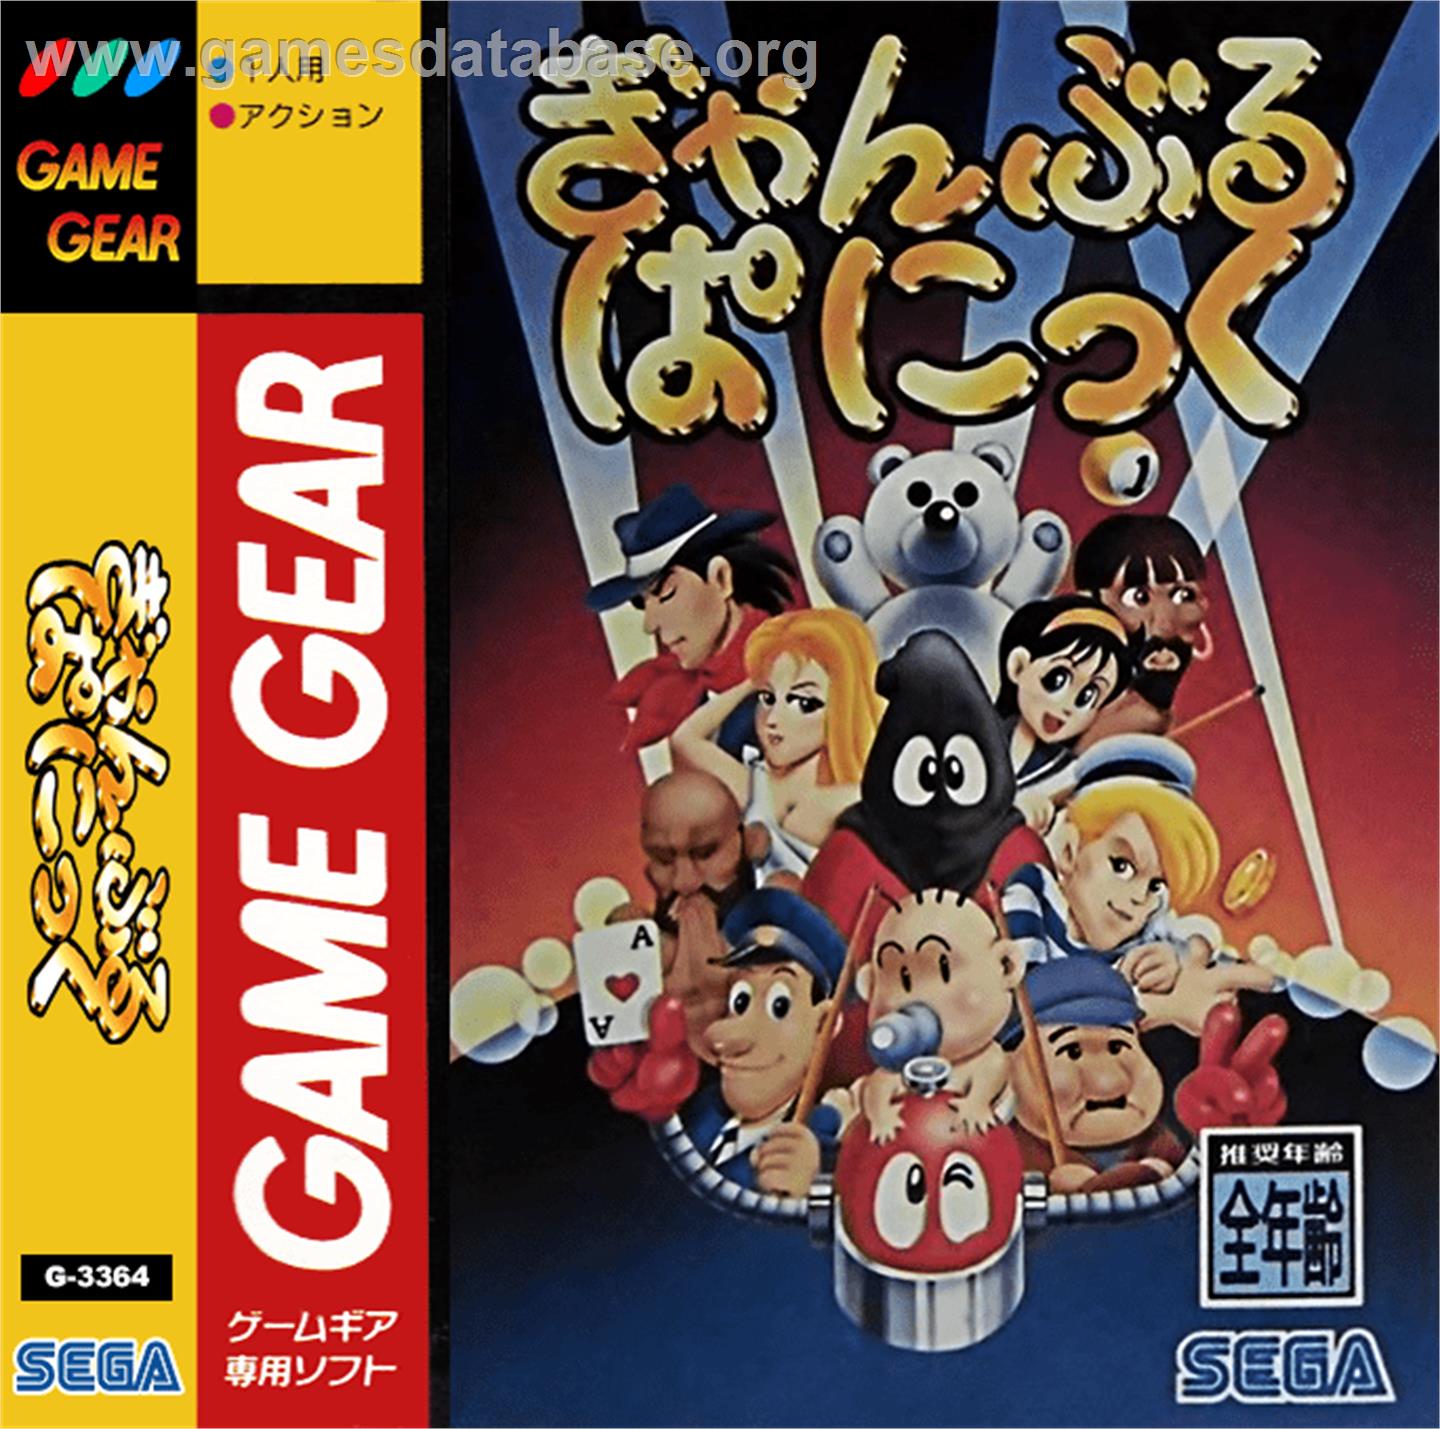 Gamble Panic - Sega Game Gear - Artwork - Box